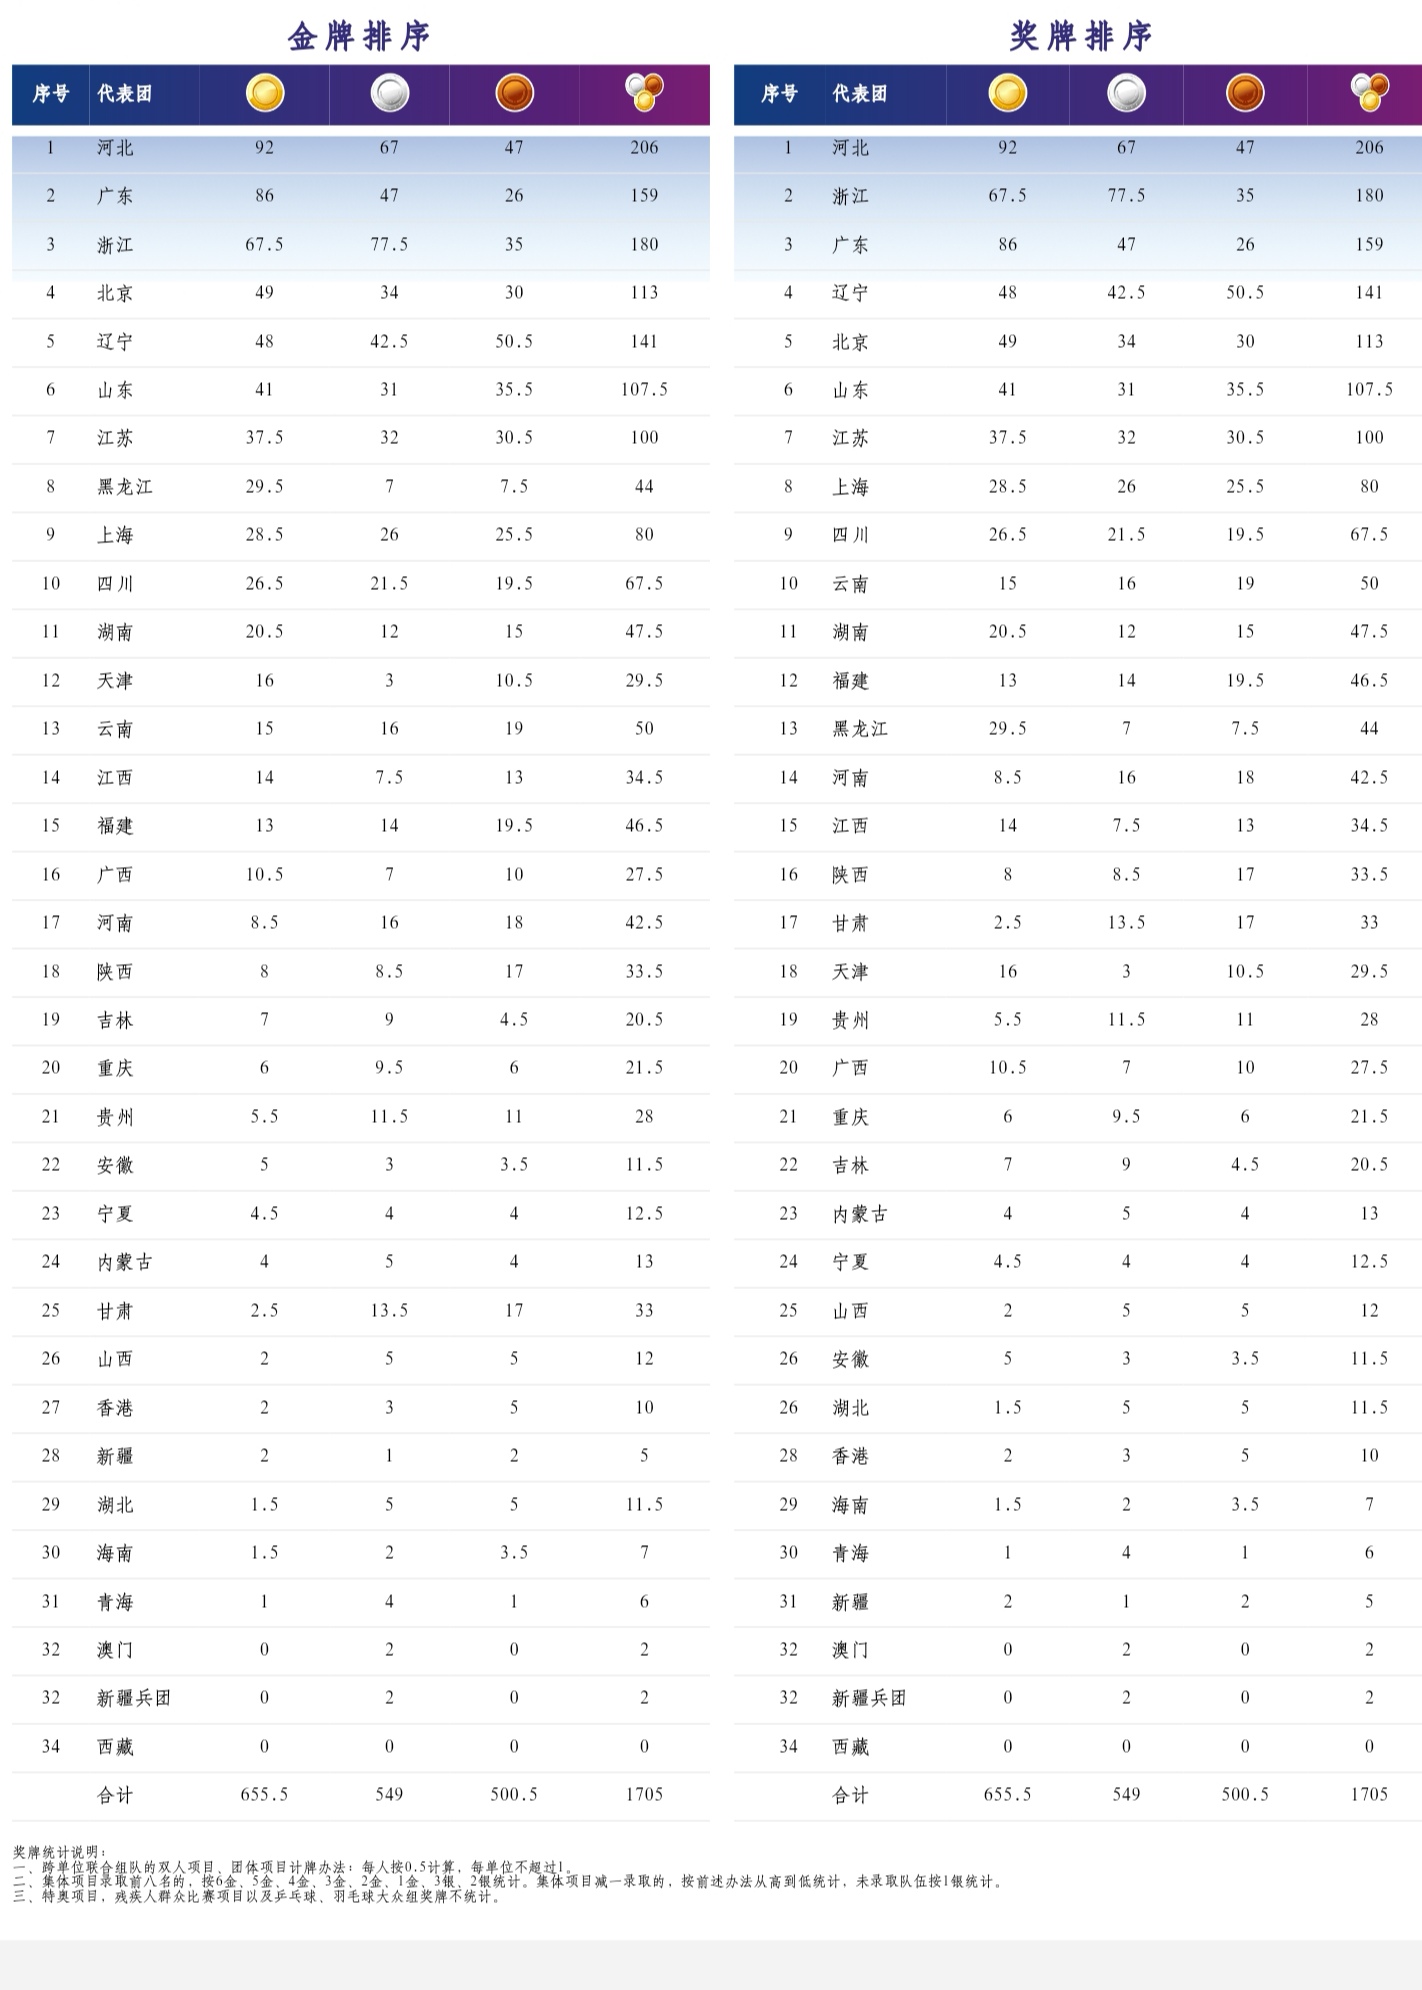 图为全国第十届残运会奖牌榜（截至27日）